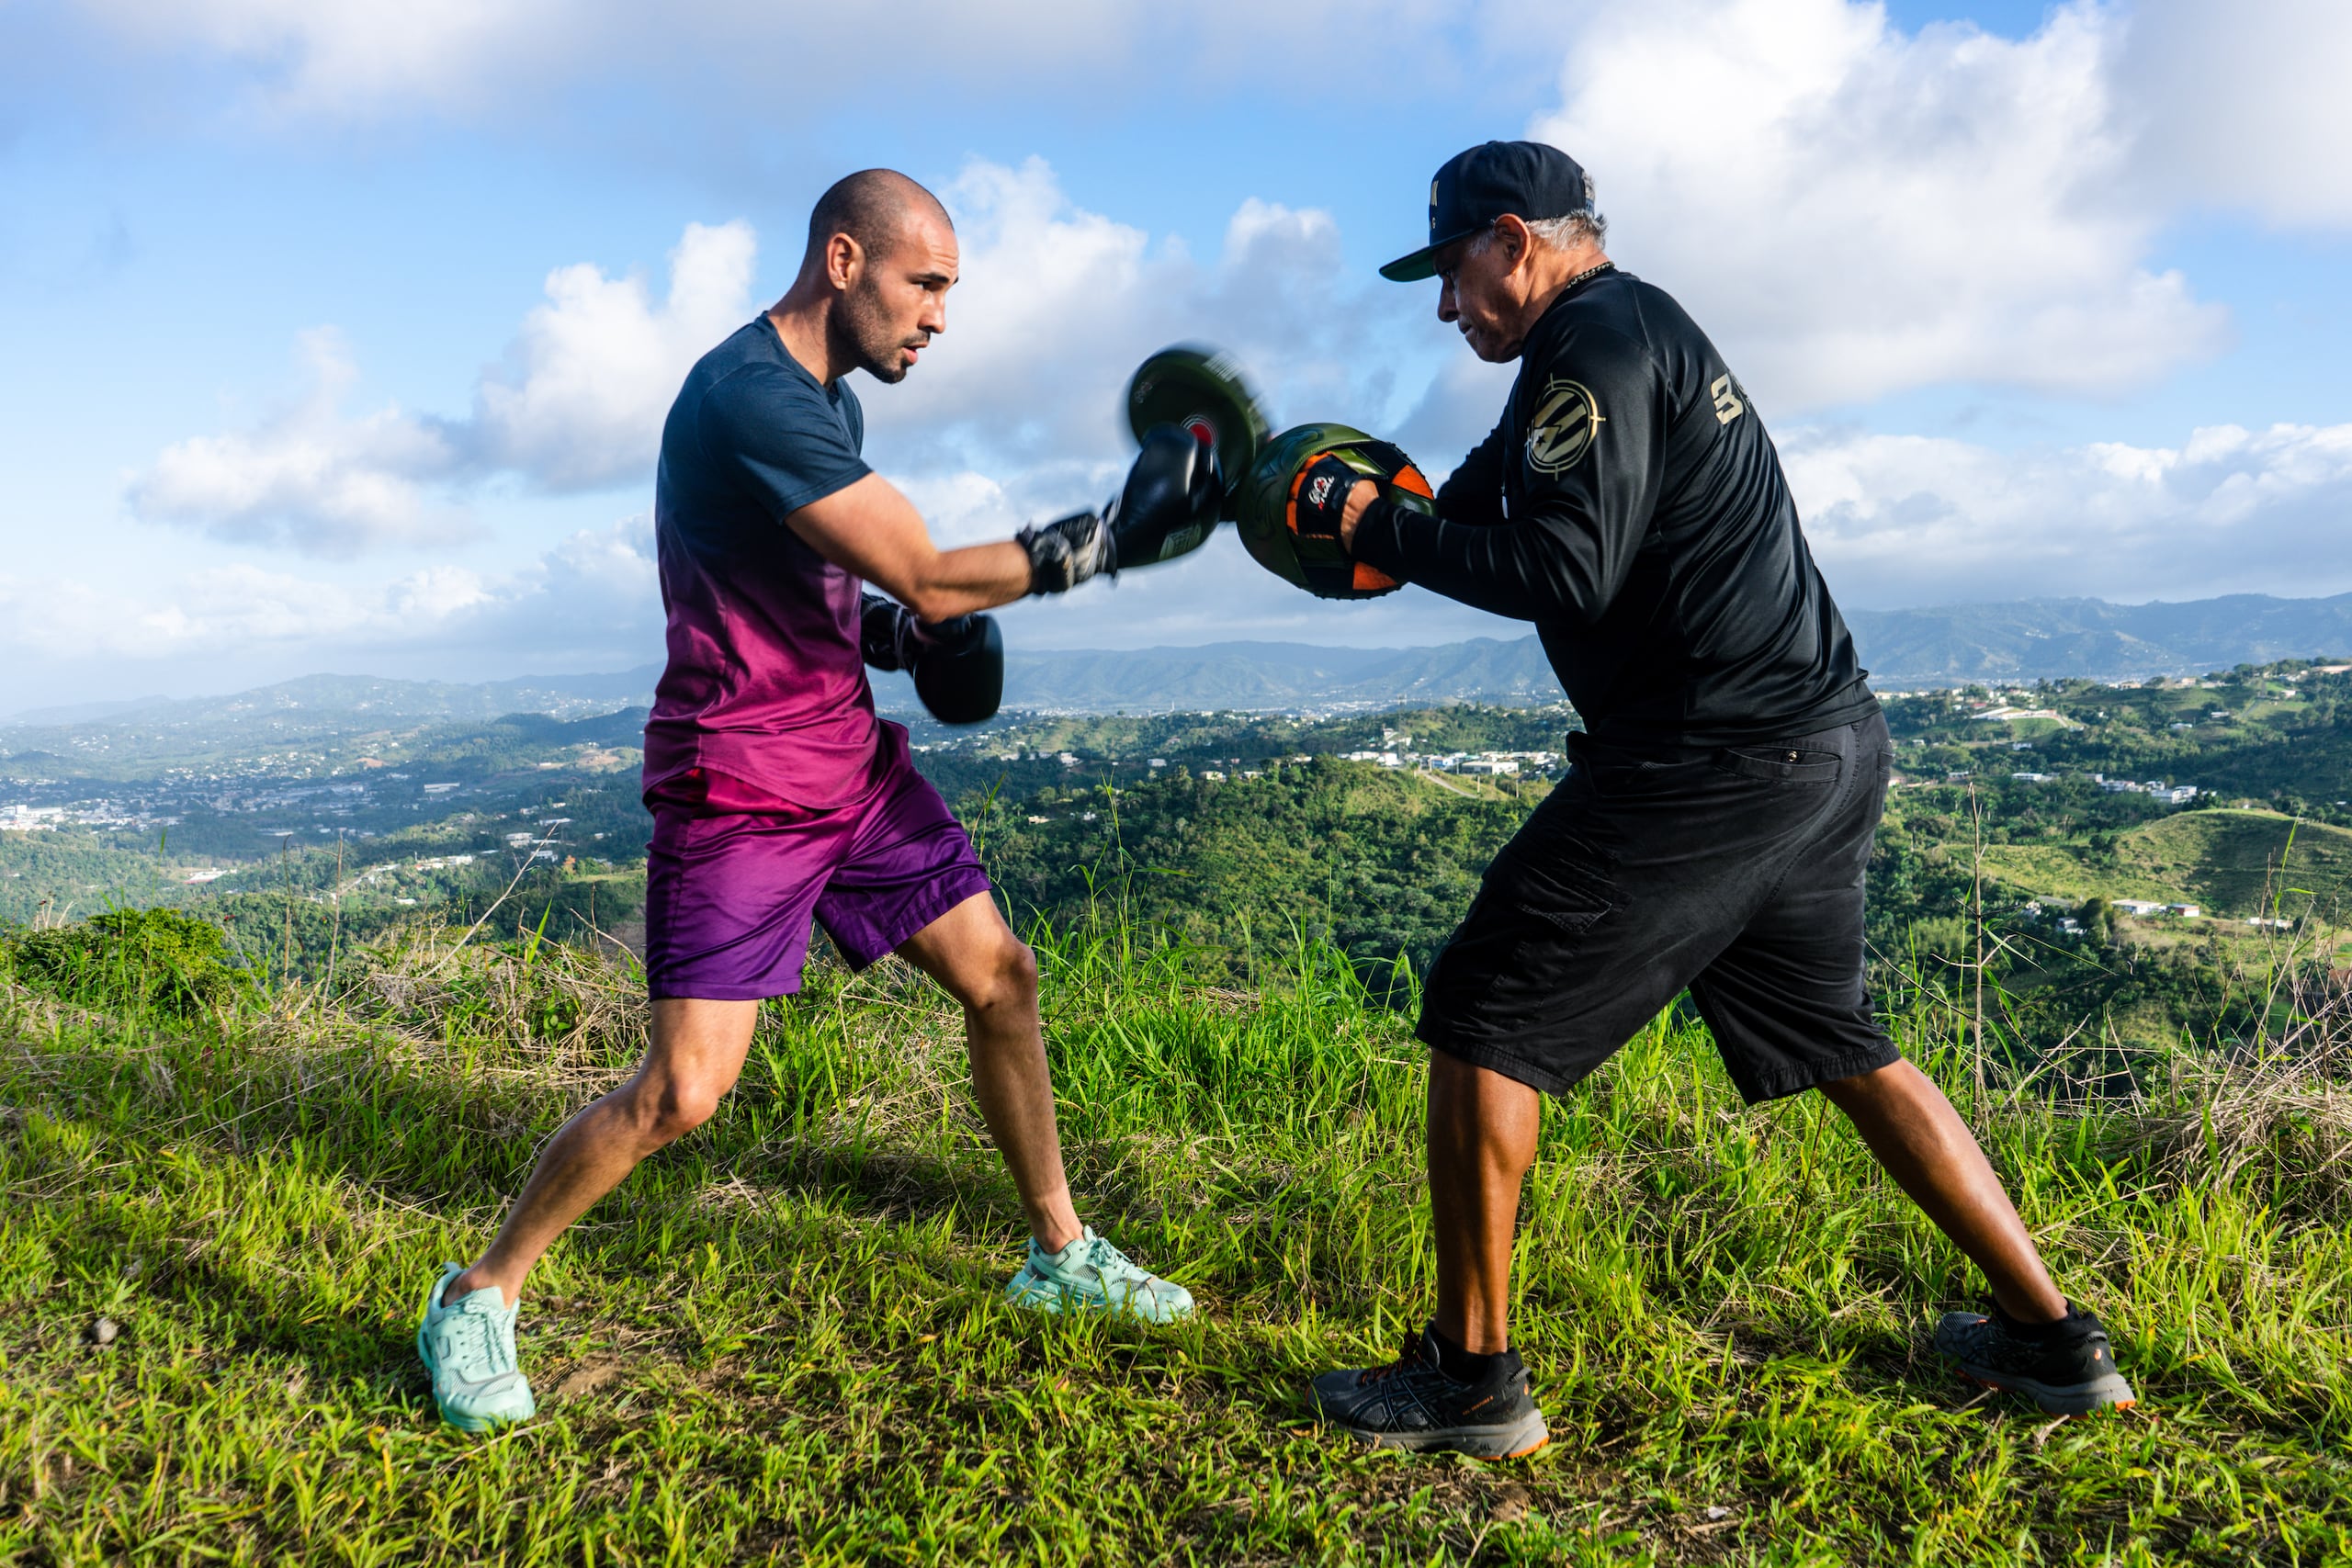 José 'Sniper' Pedraza busca igualar las gestas deportivas logradas por los más grandes boxeadores de la historia de Puerto Rico, de ser al menos un campeón mundial en tres divisiones diferentes. (Top Rank)